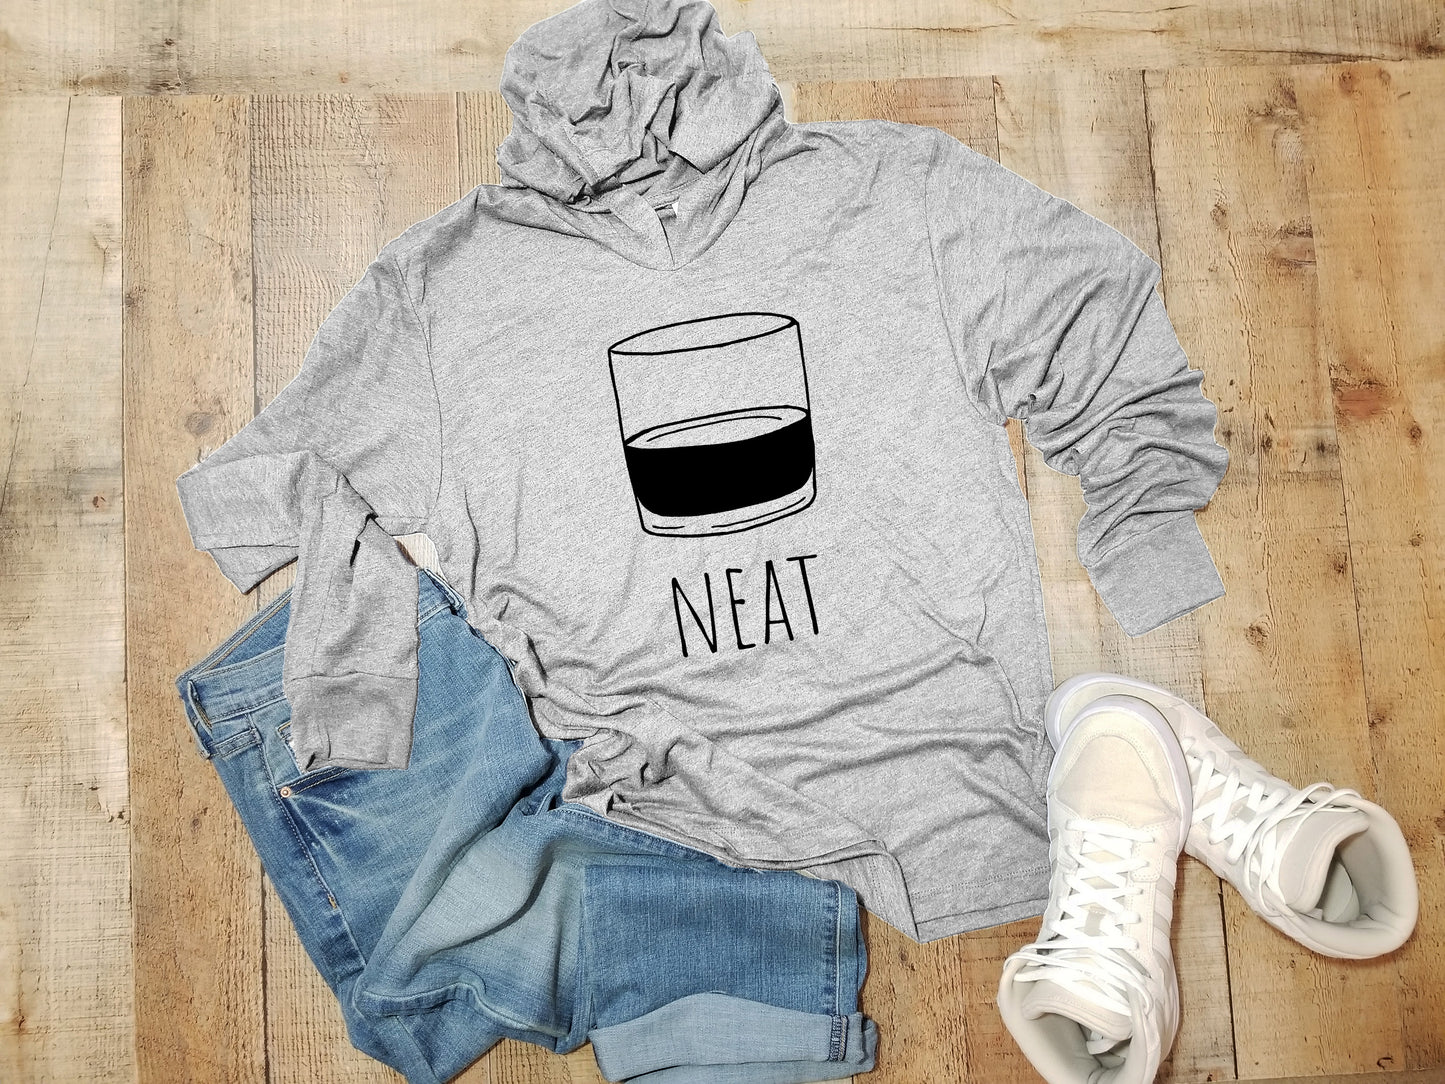 Neat (Whiskey) - Unisex T-Shirt Hoodie - Heather Gray